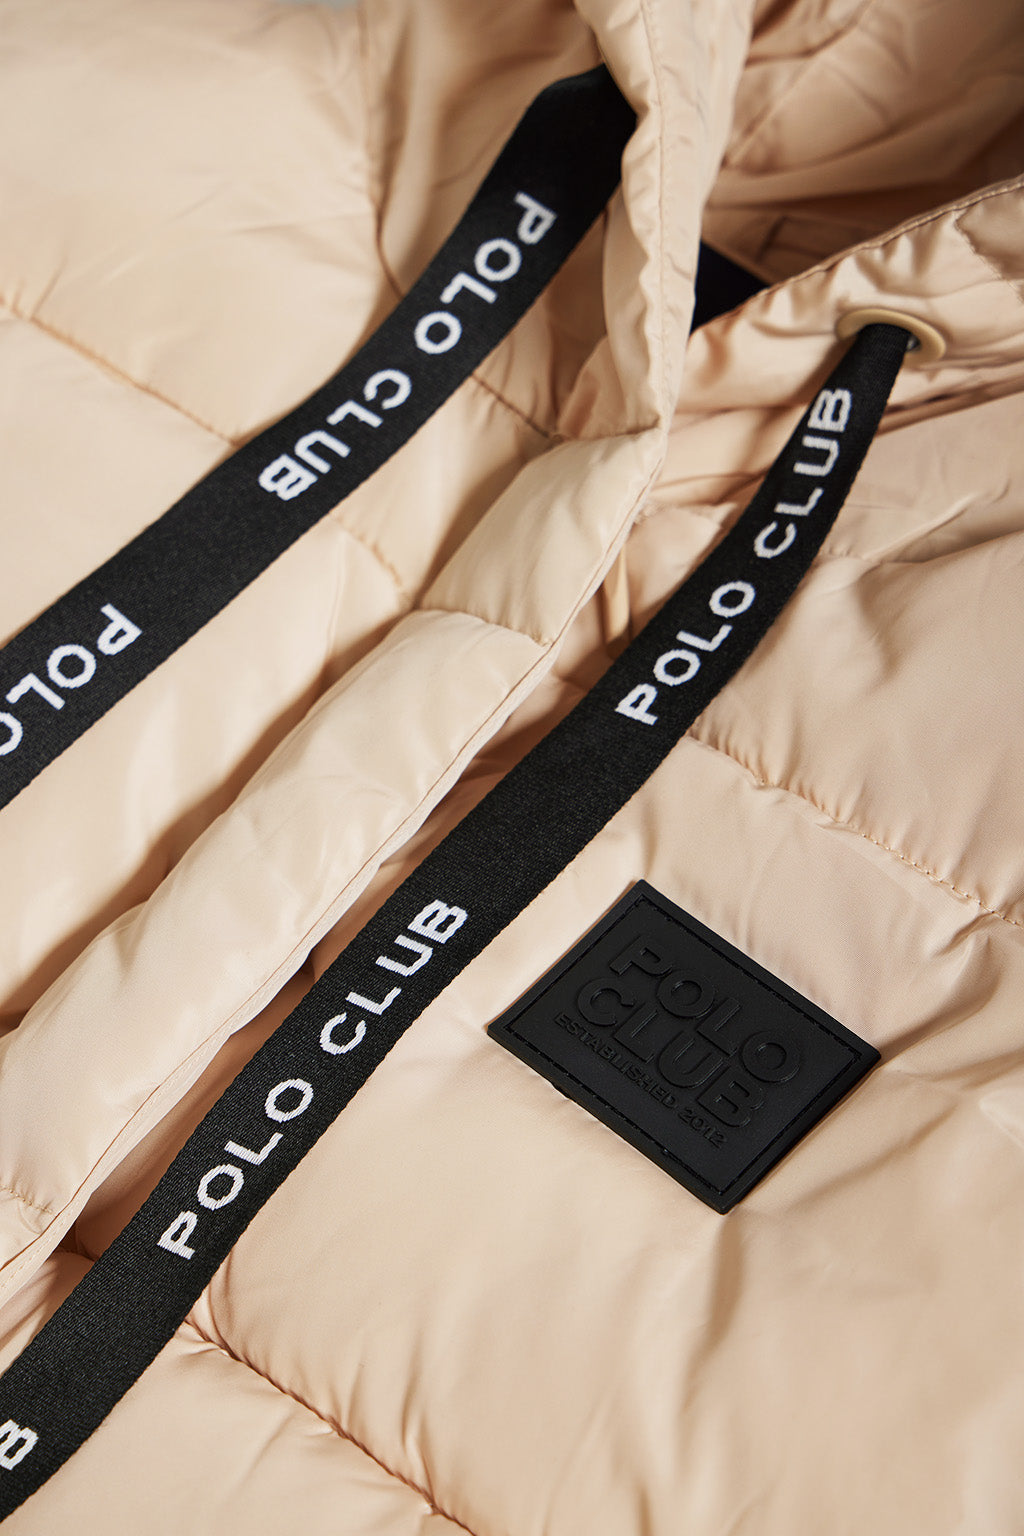 Chaleco beige metalizado con capucha y logo Polo Club